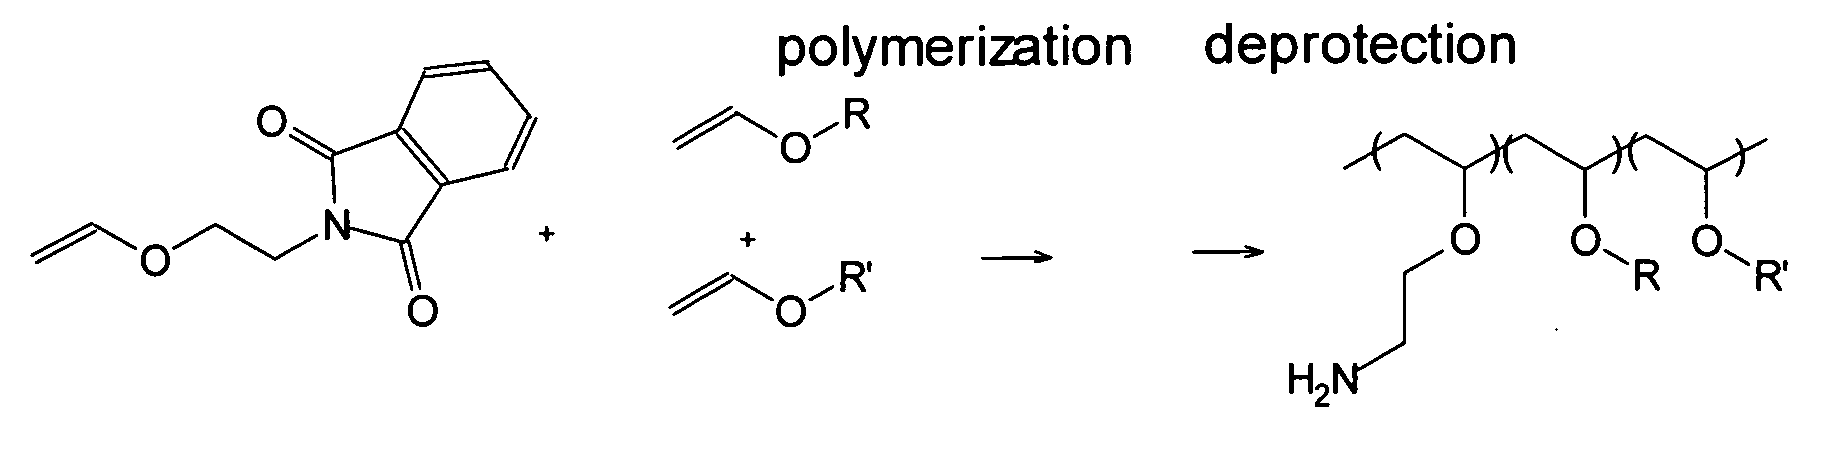 Endosomolytic Poly(Vinyl Ether) Polymers